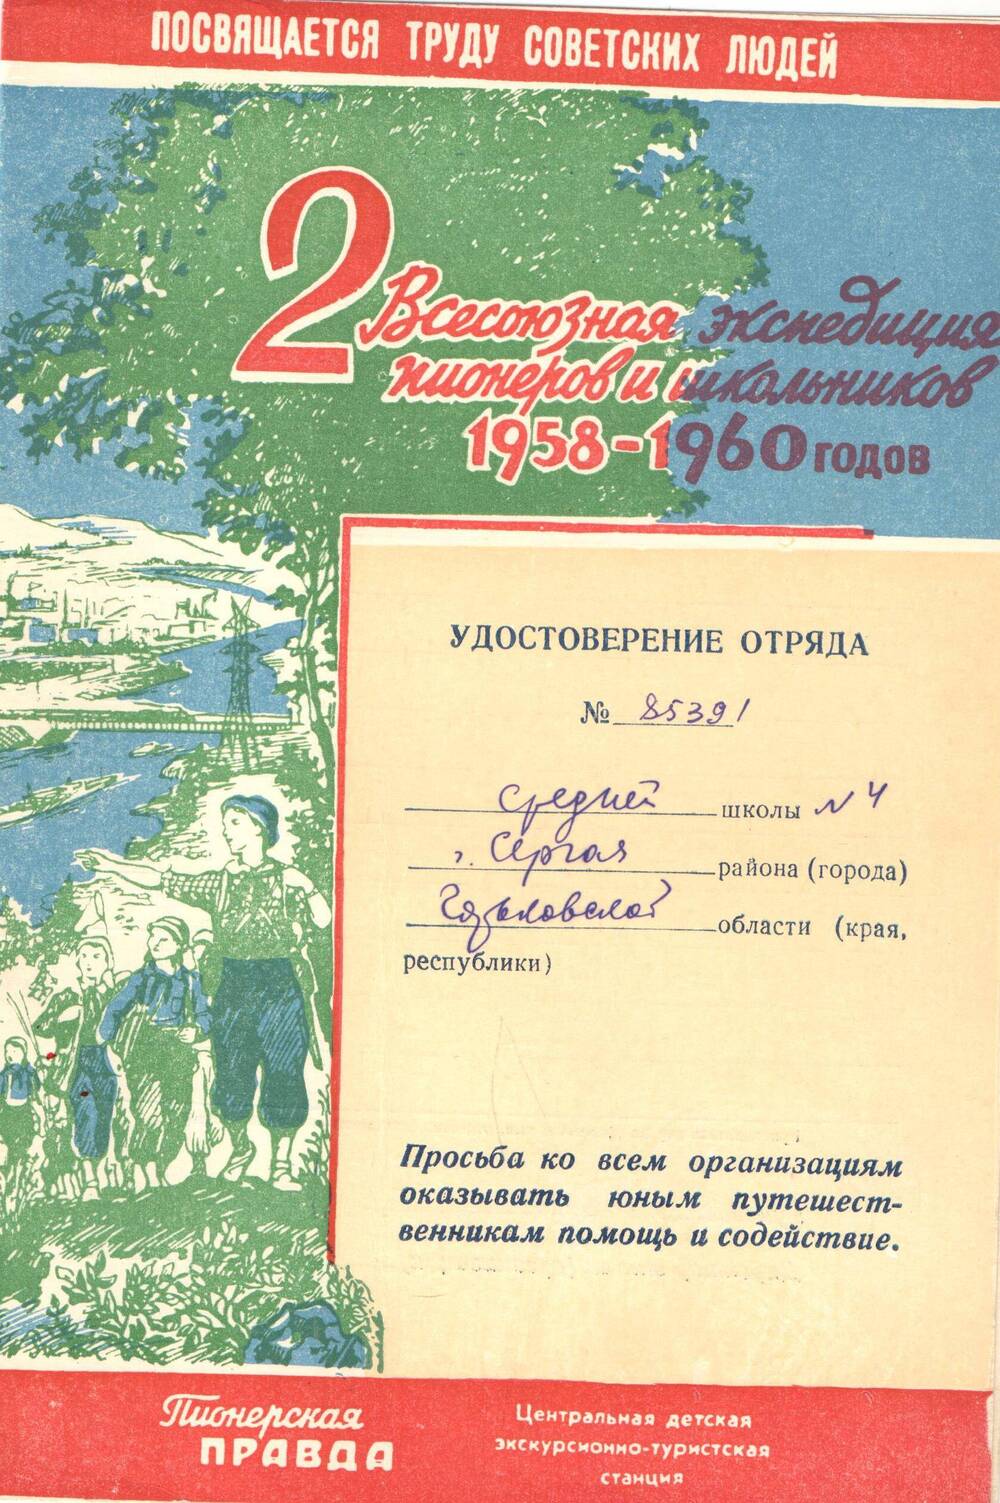 Удостоверение отряда средней школы №4  станции Сергач №85391 1958-1960 гг